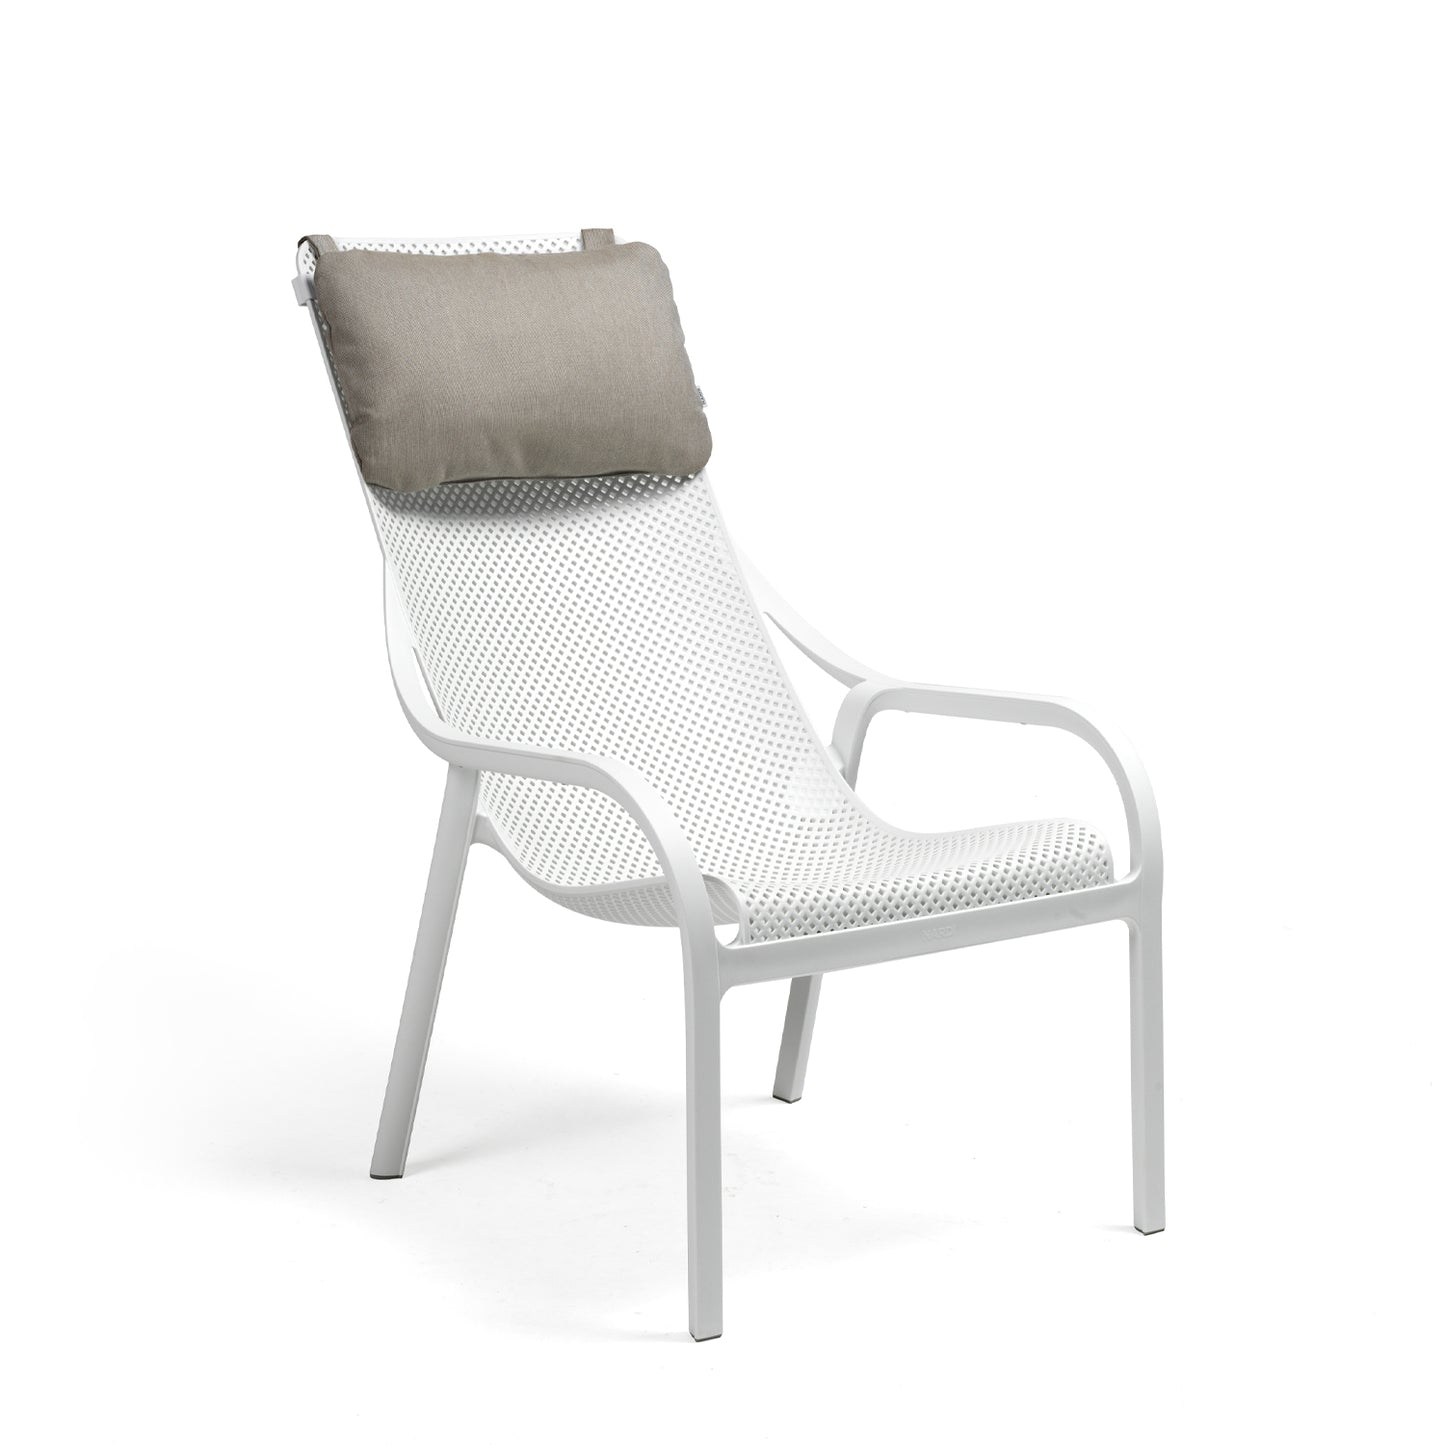 Net Lounge Cushion By Nardi